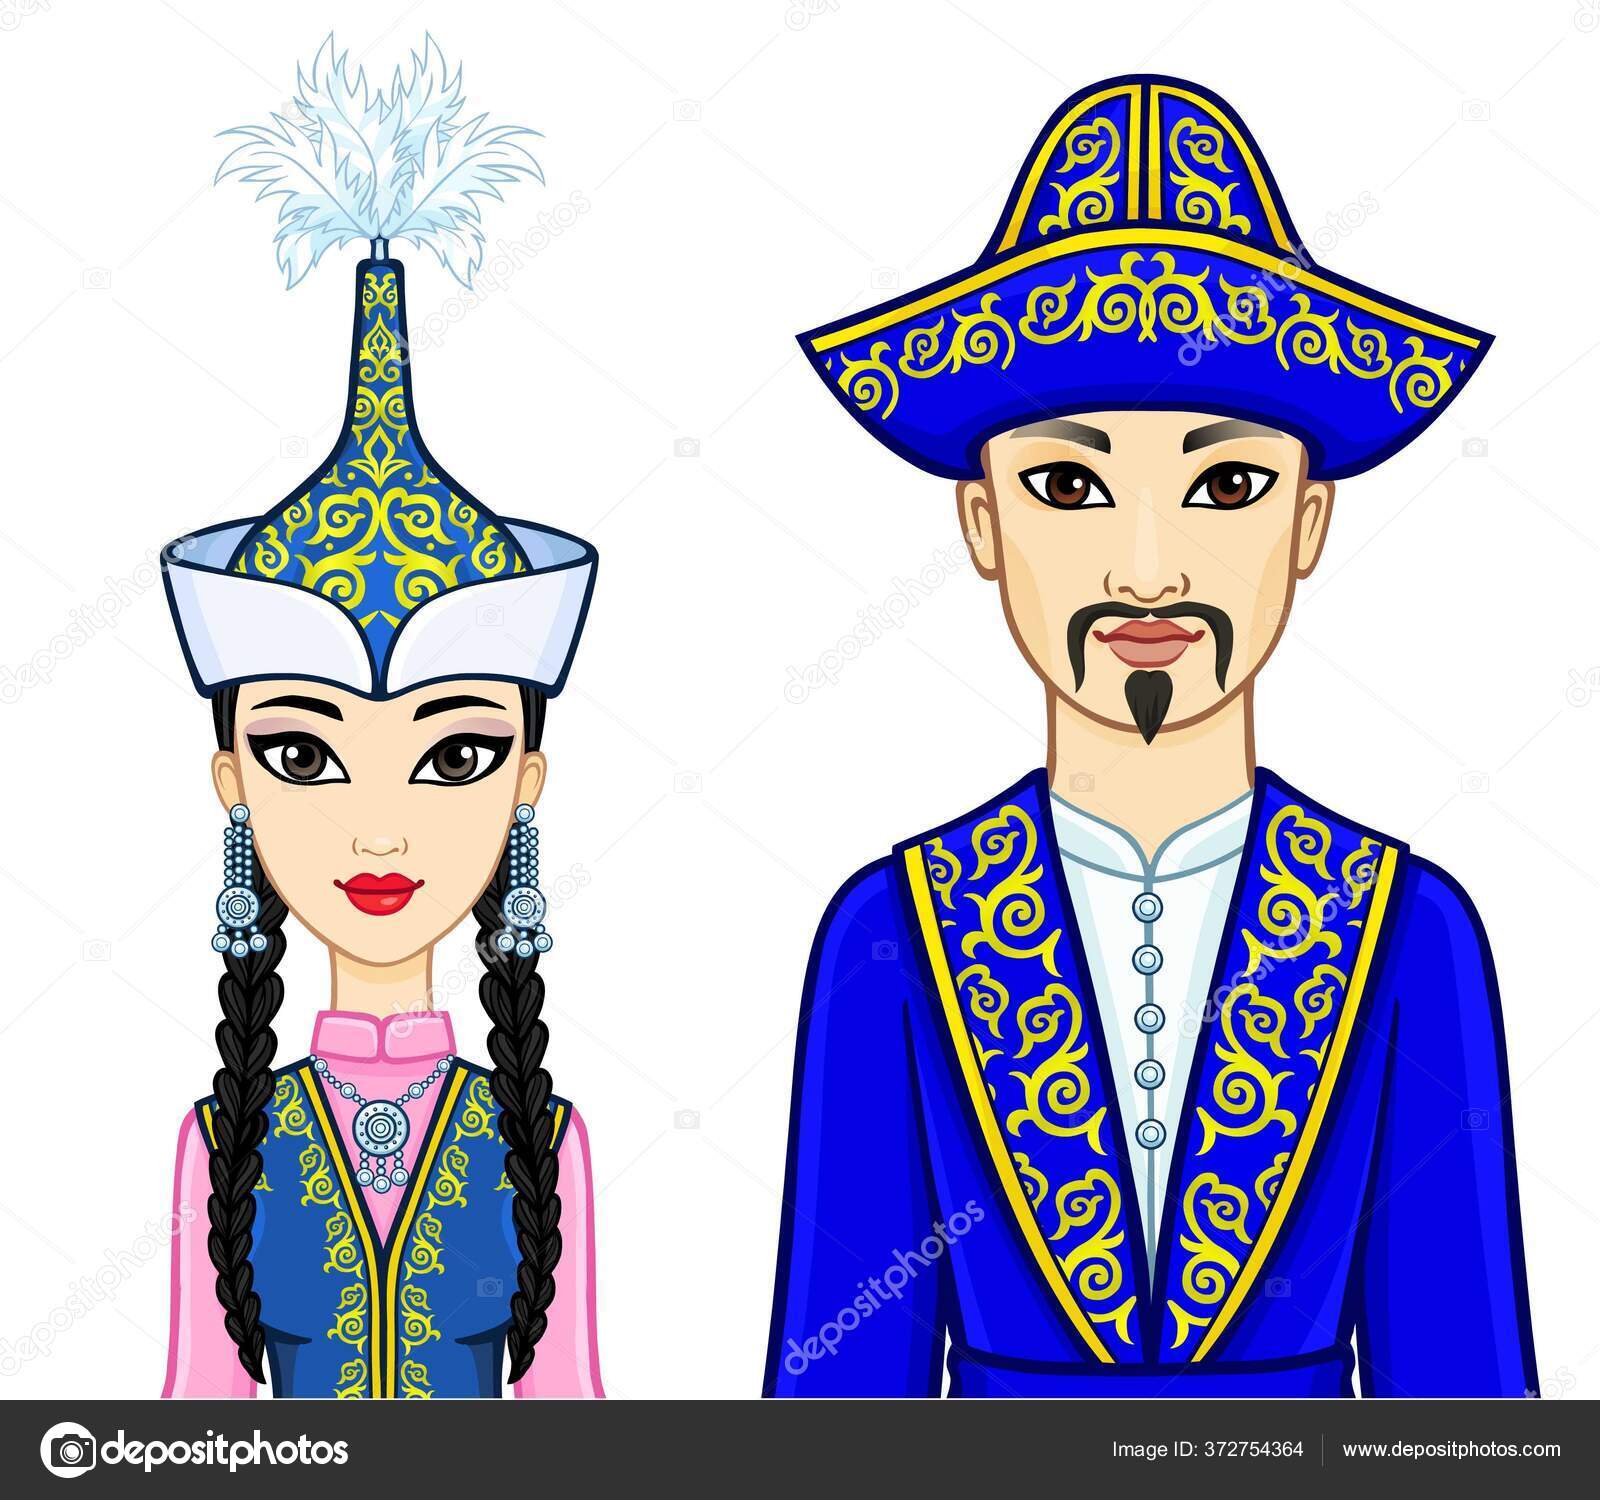 Раскраска национальные костюмы казахов